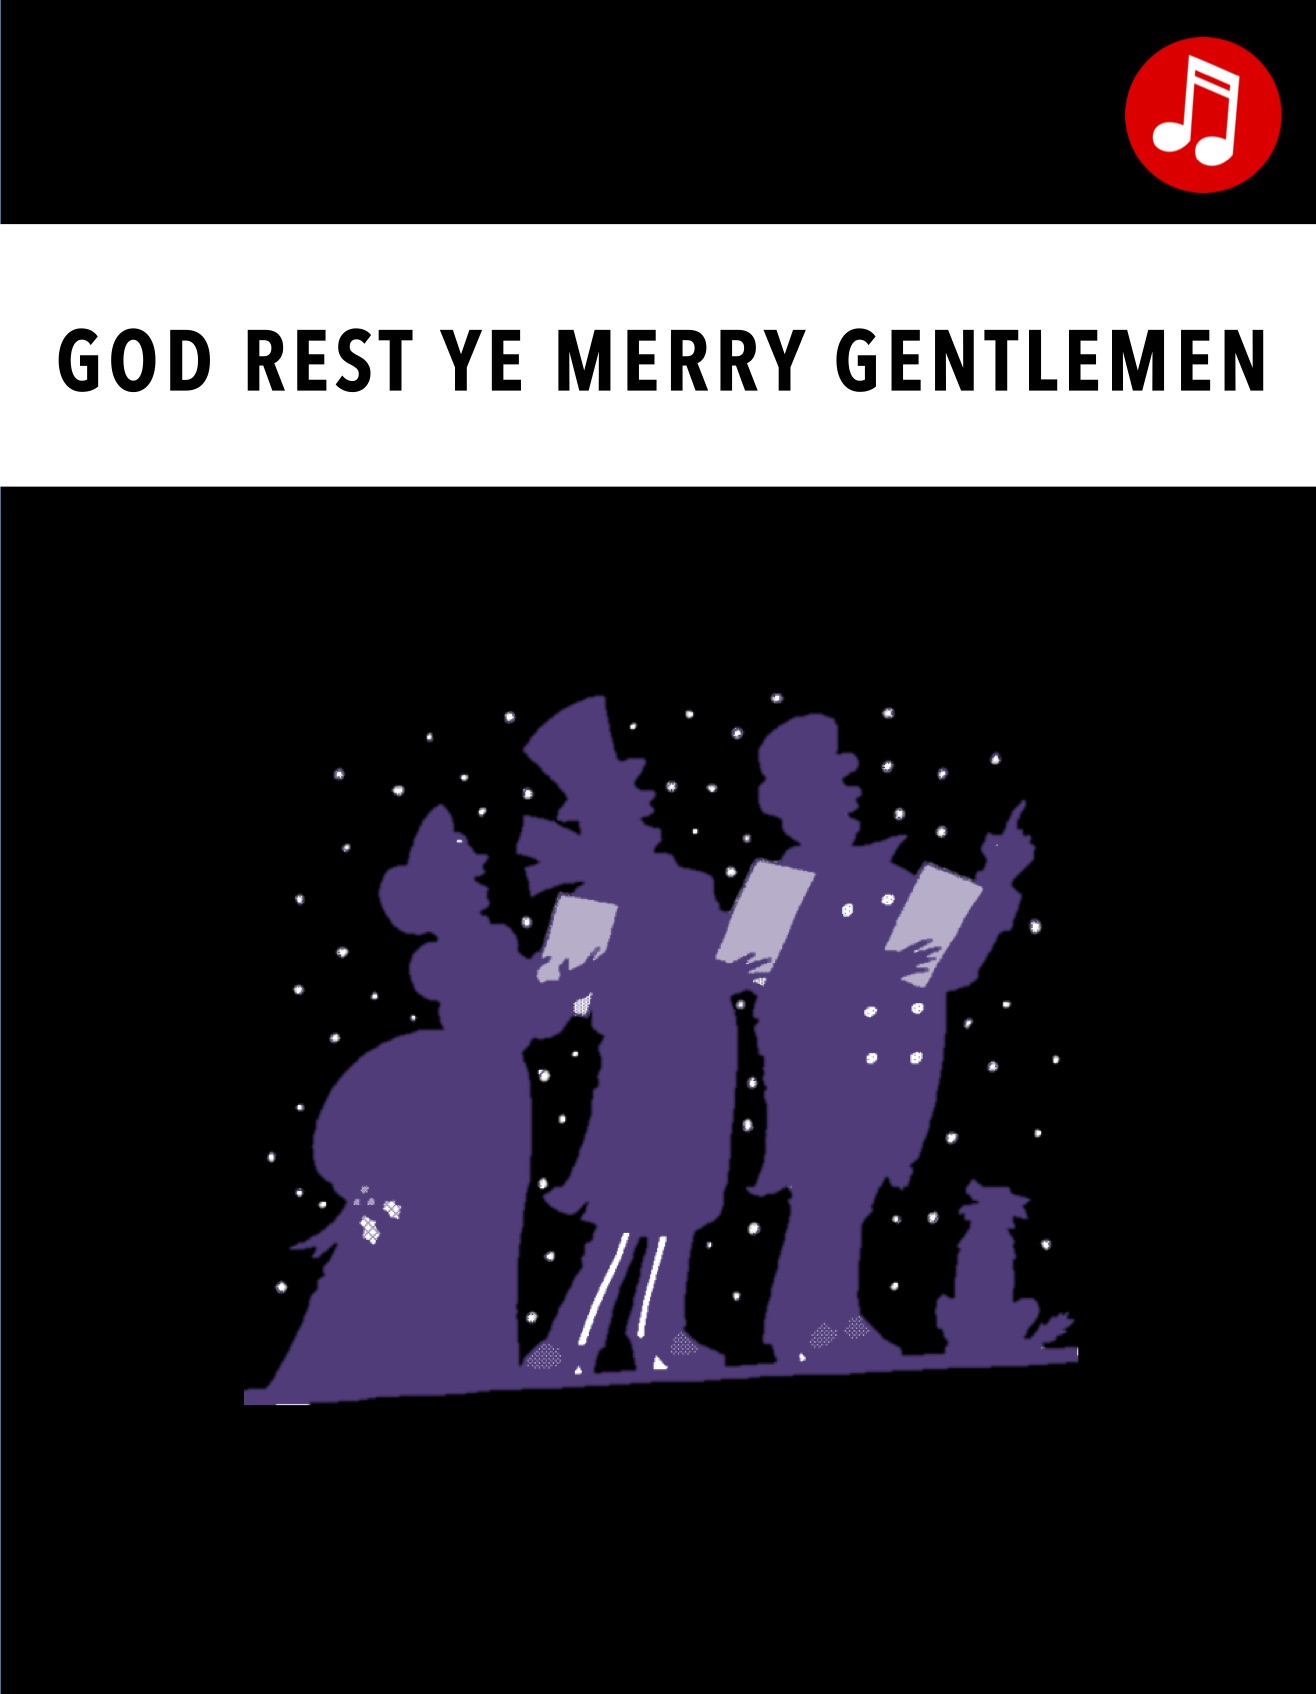 god rest ye merry gentlemen lyrics in french